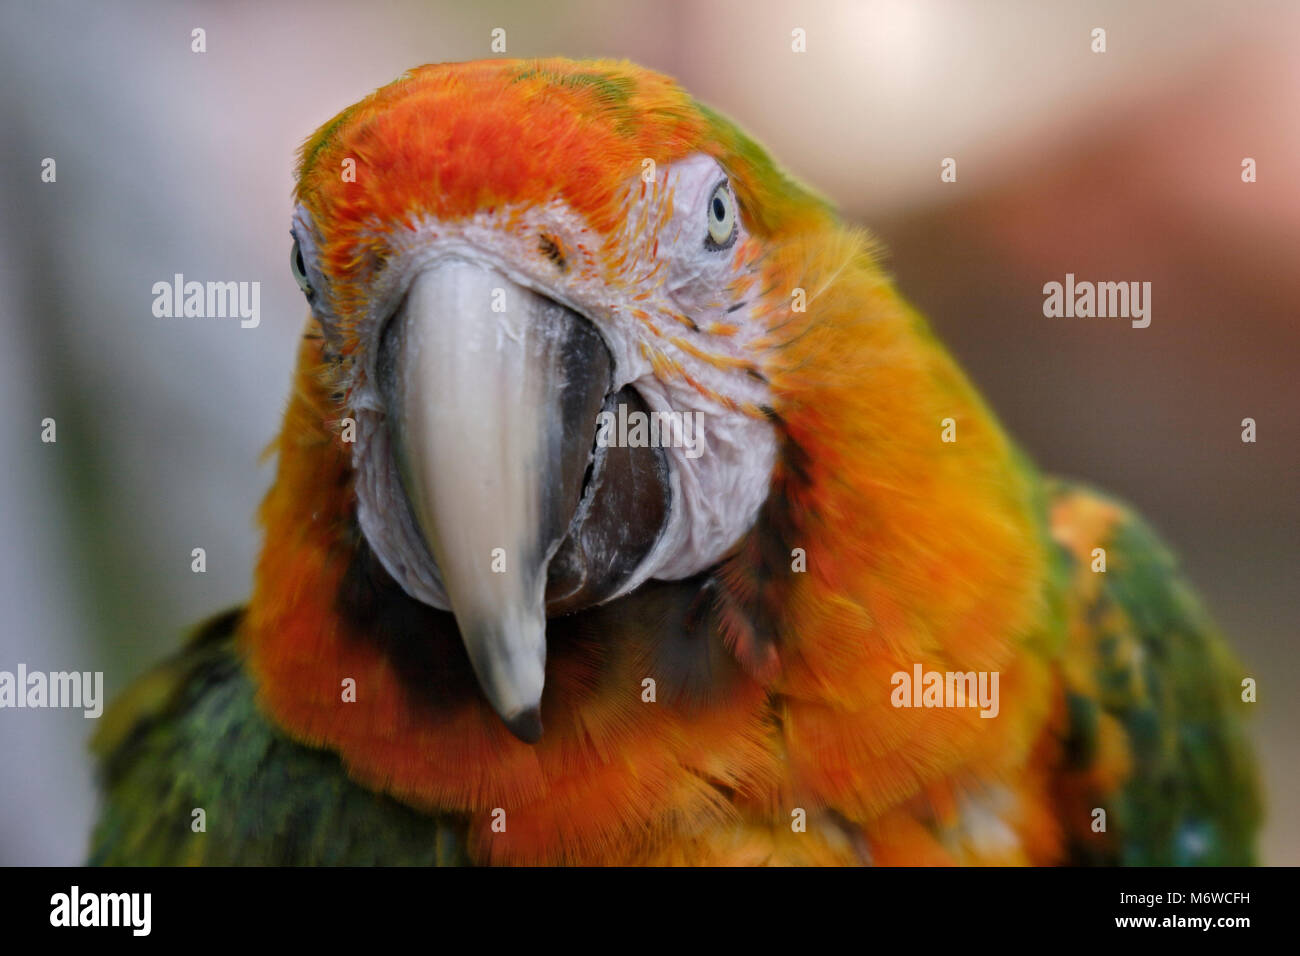 Harlequin Macaw (psittacidae) Stock Photo